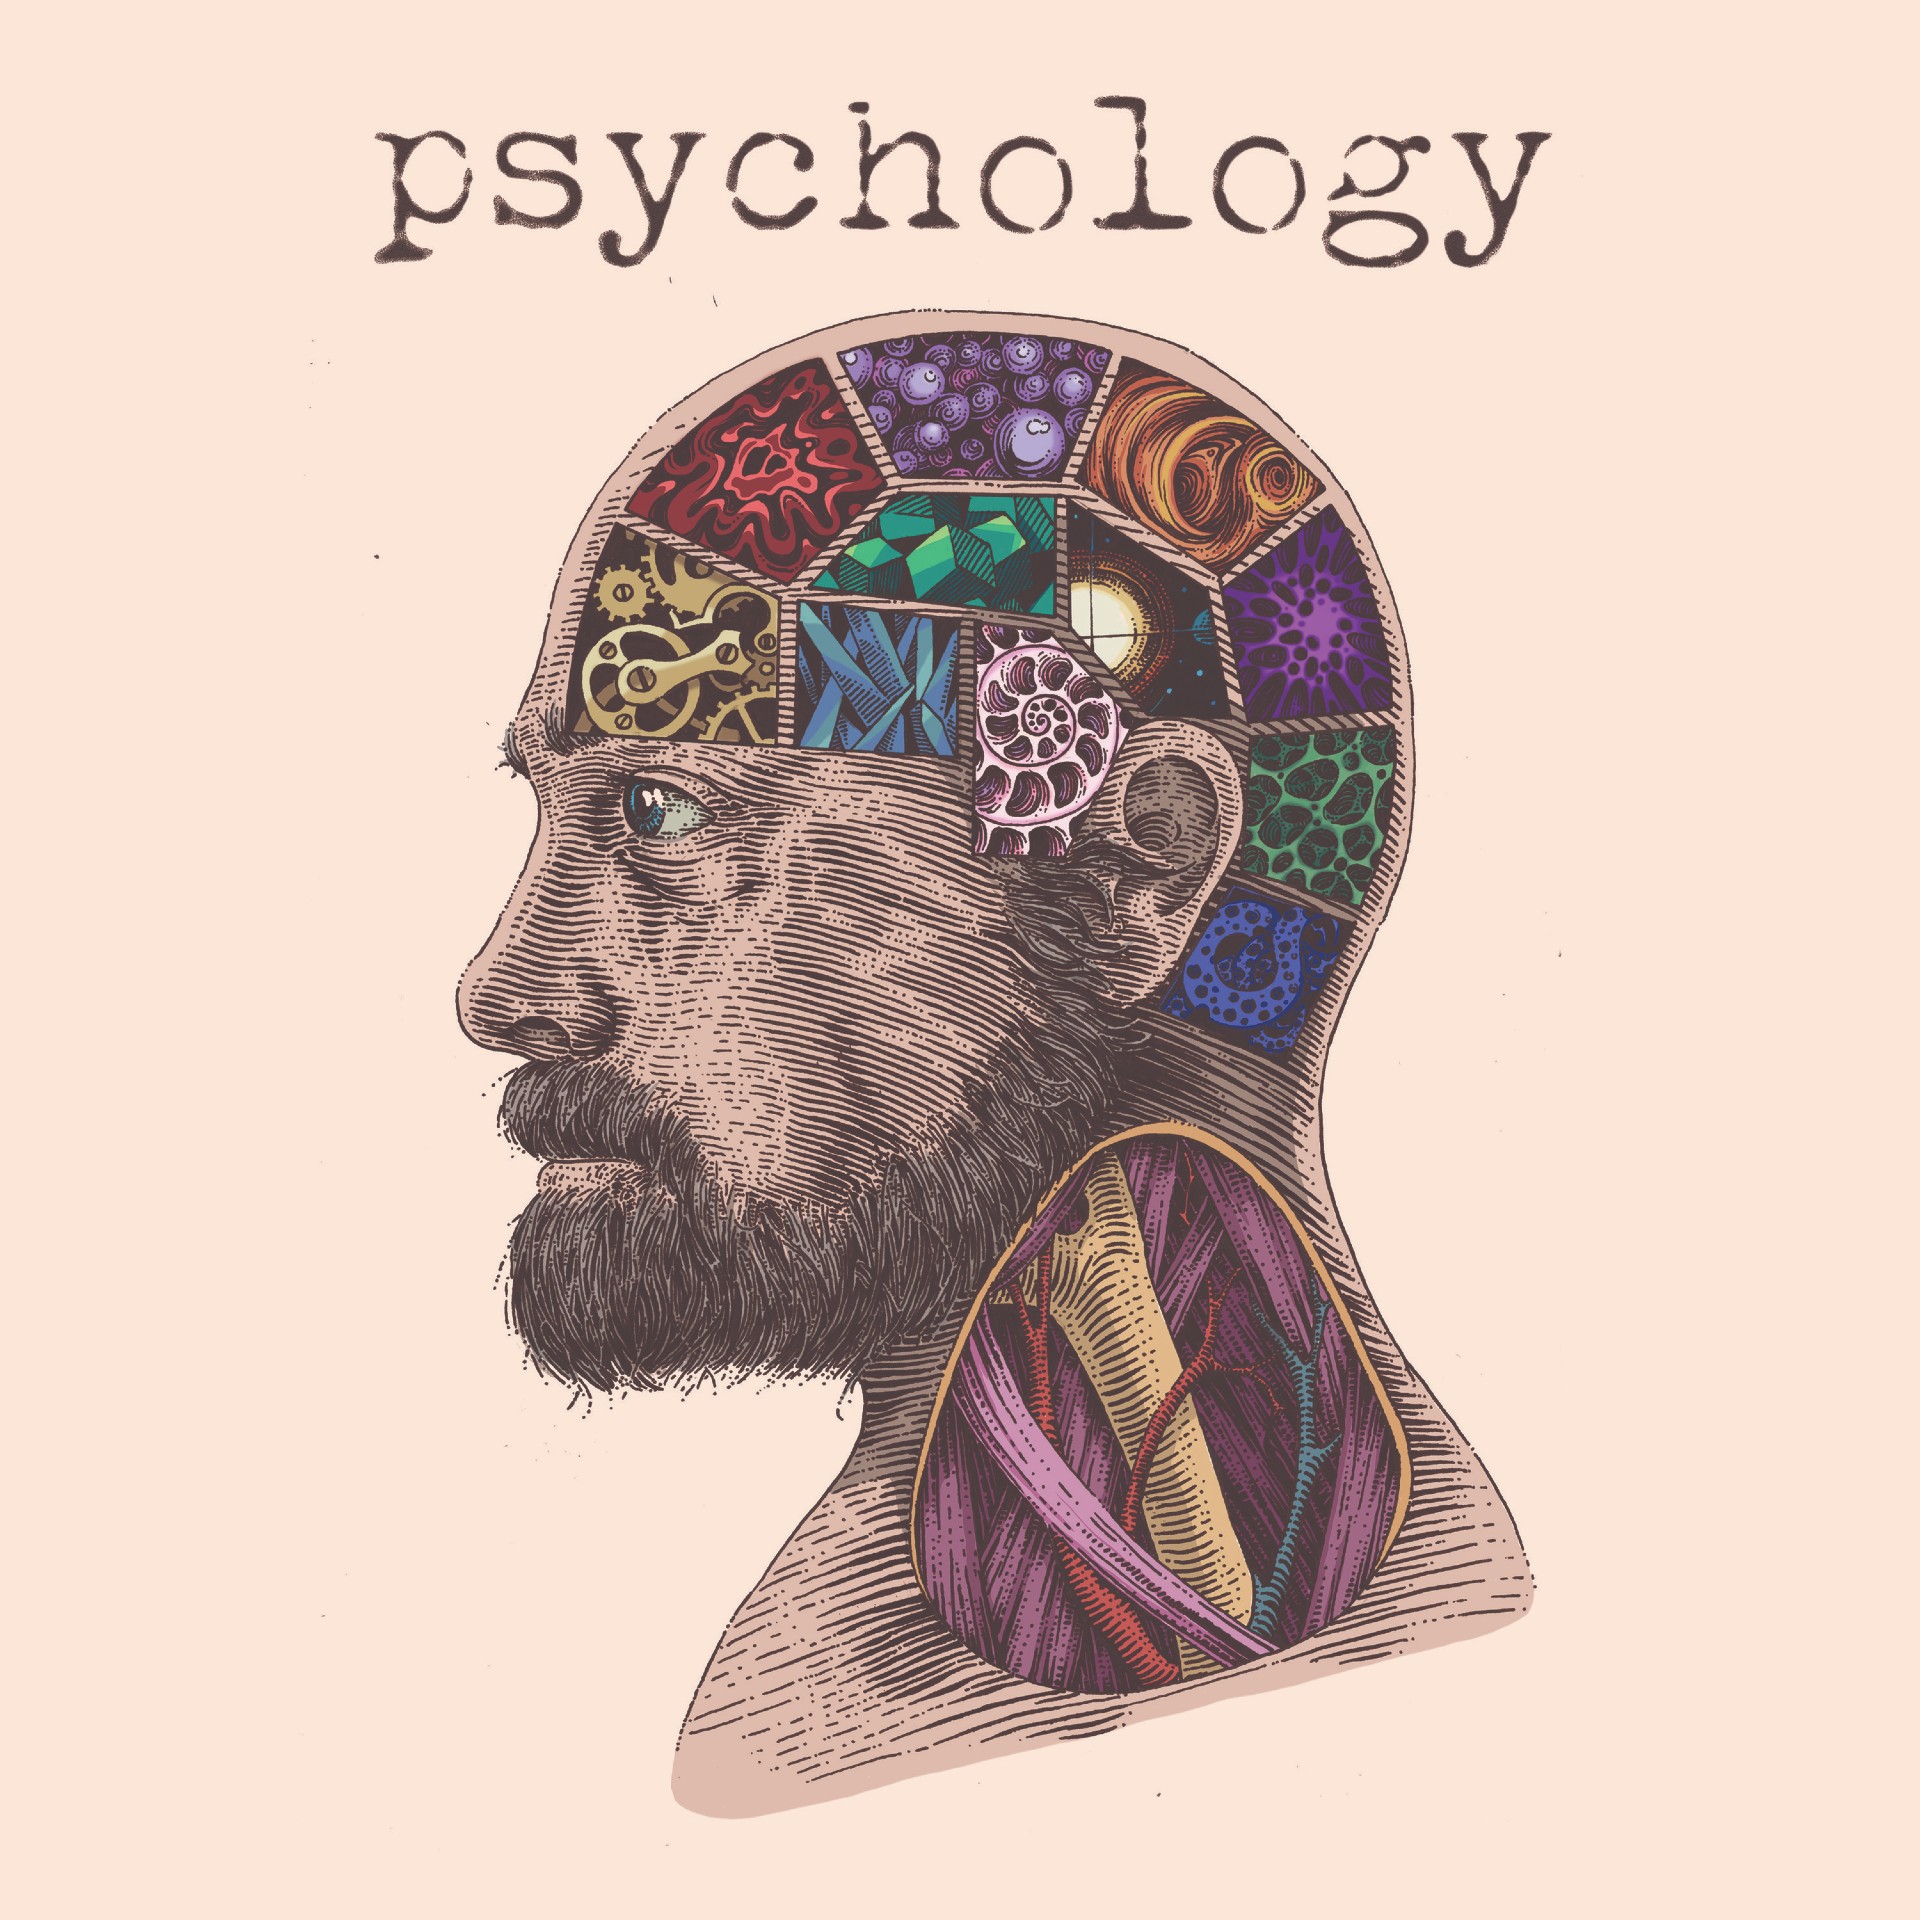 Psychology ‘Psychology’ album artwork